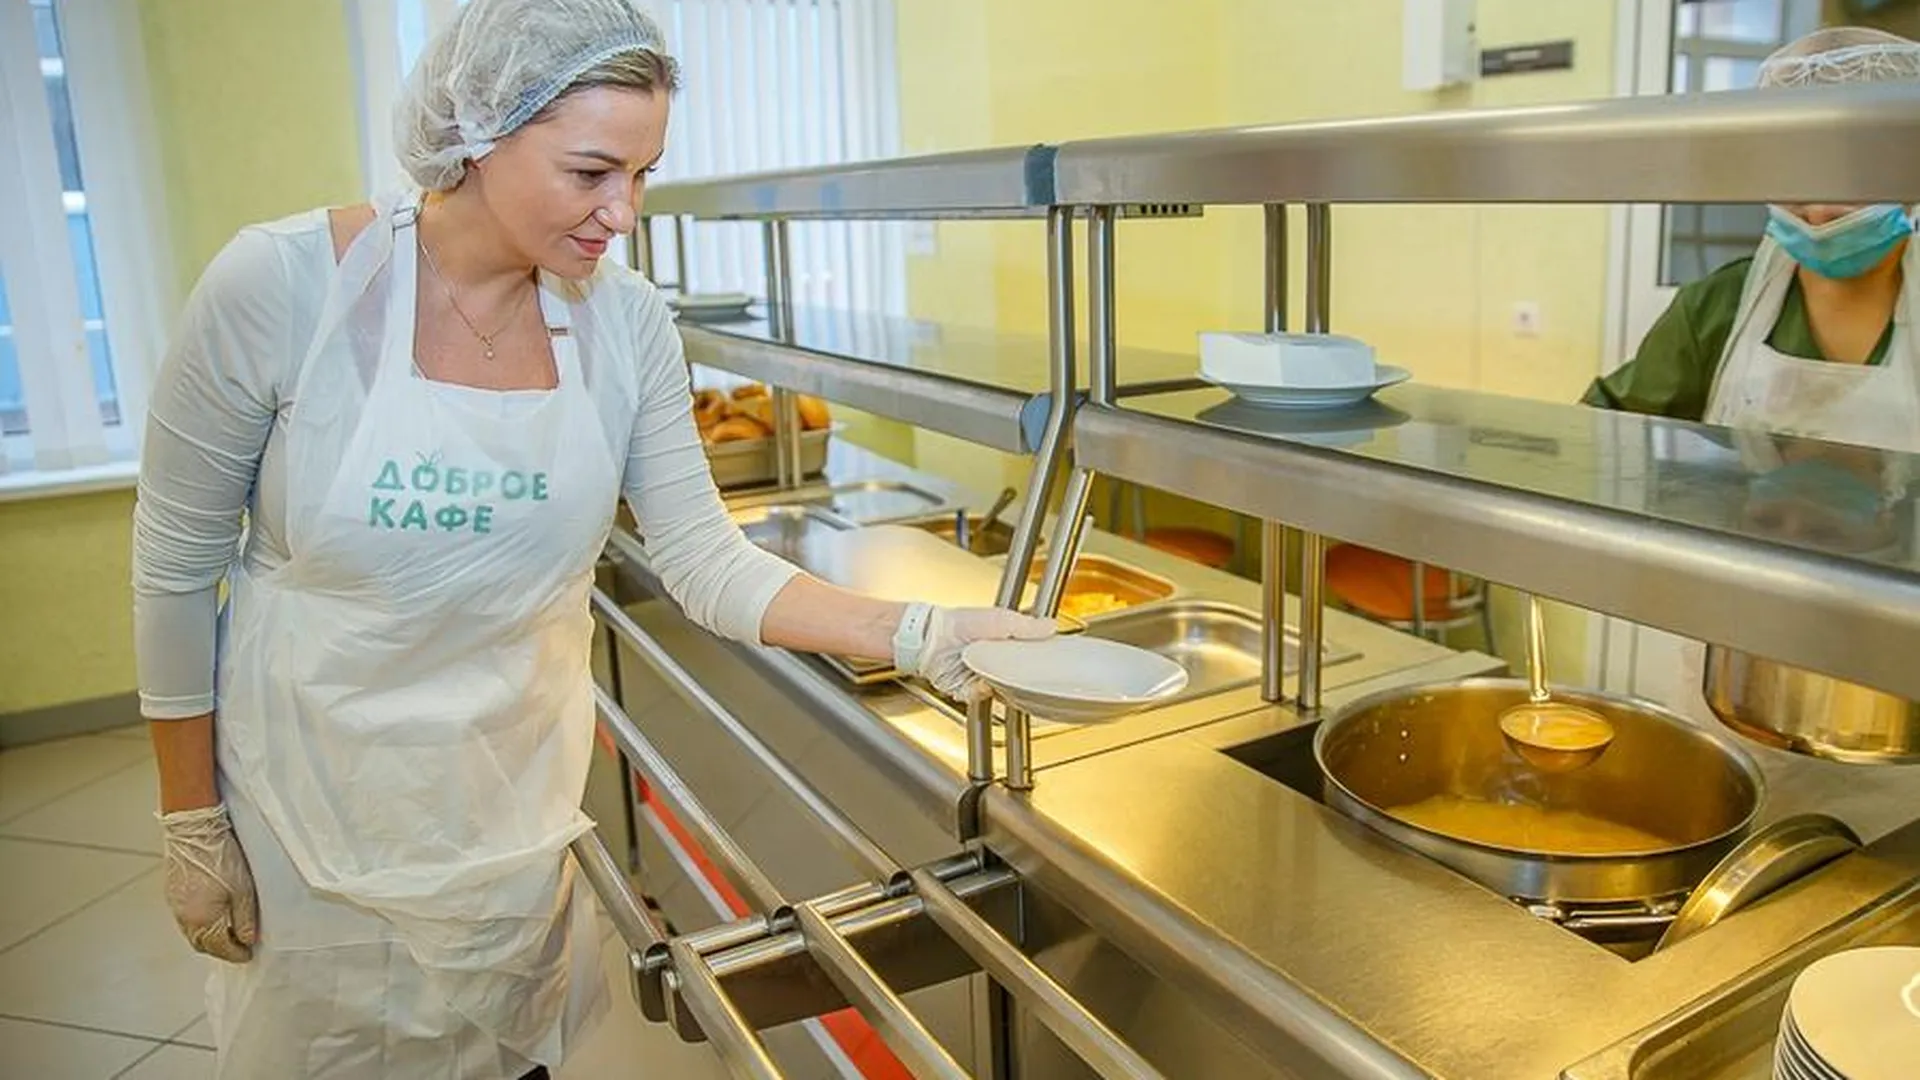 Комбинат «Доброе кафе» обеспечит питанием школьников Одинцова в новом учебном году